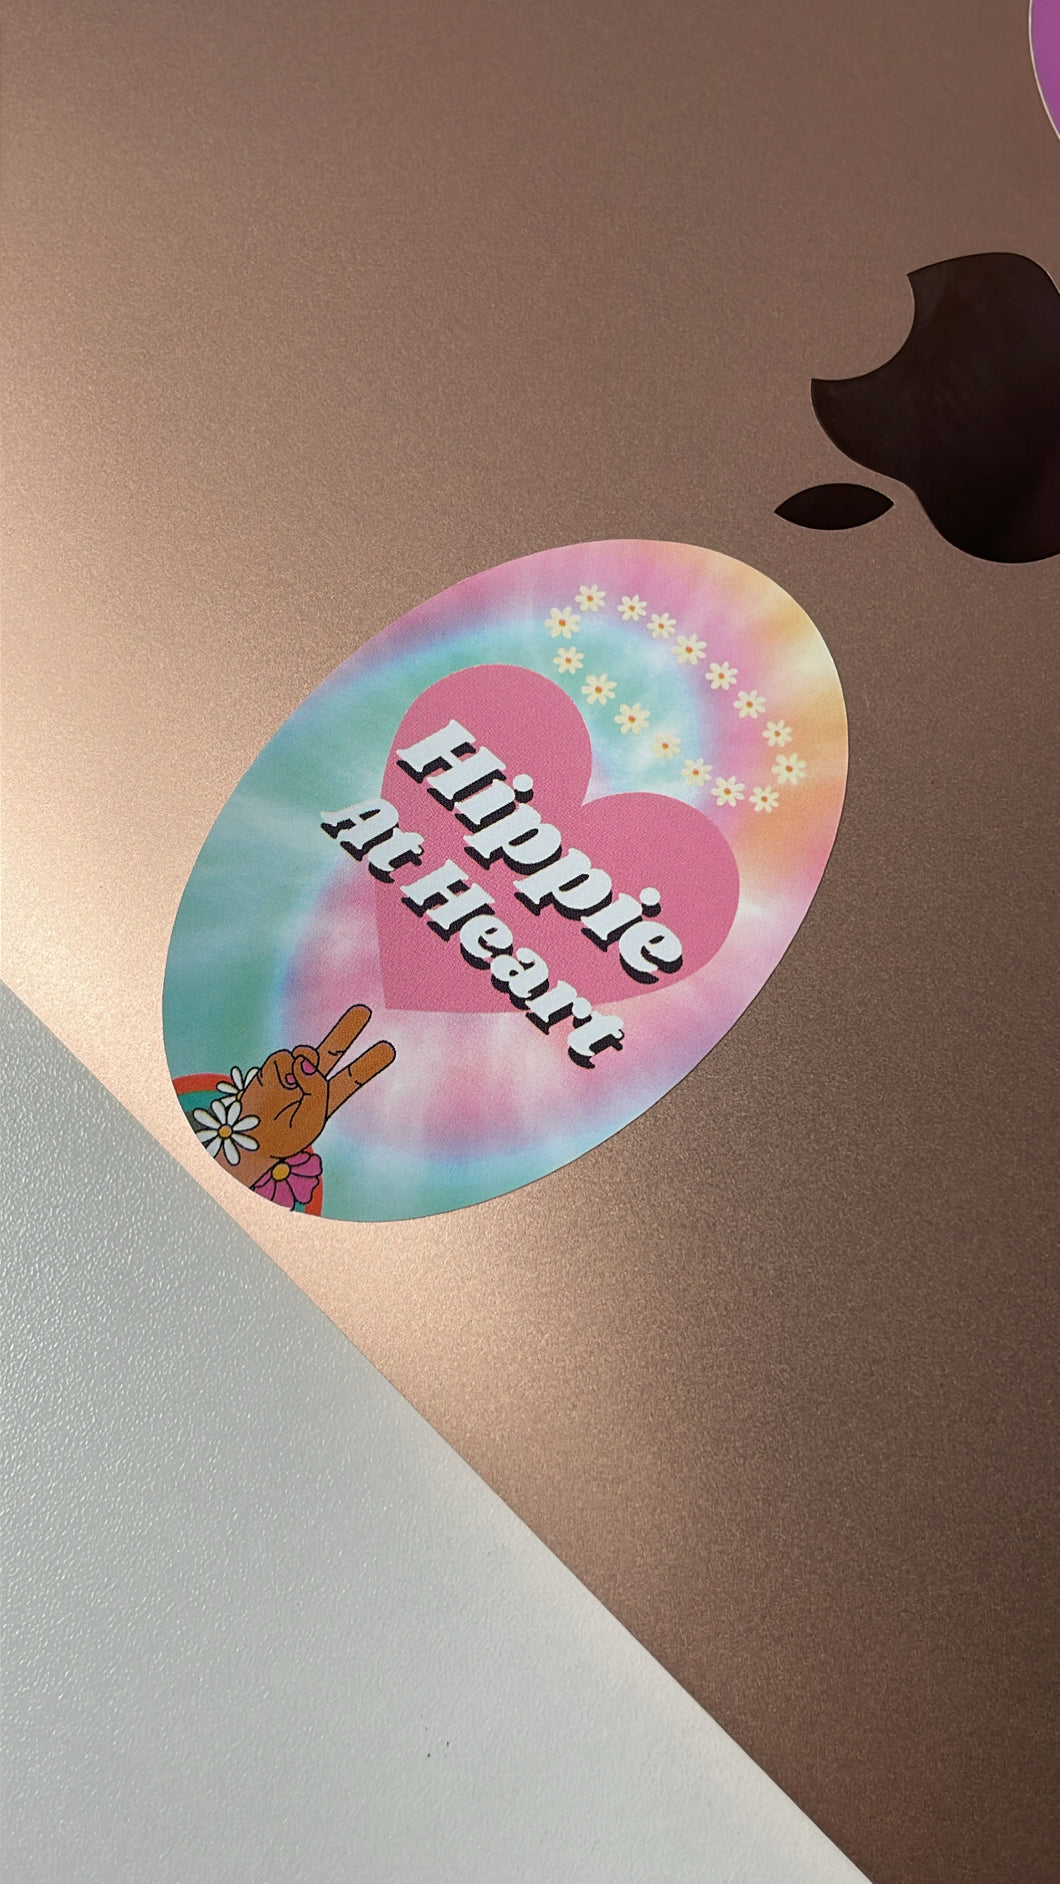 Hippie At Heart Sticker